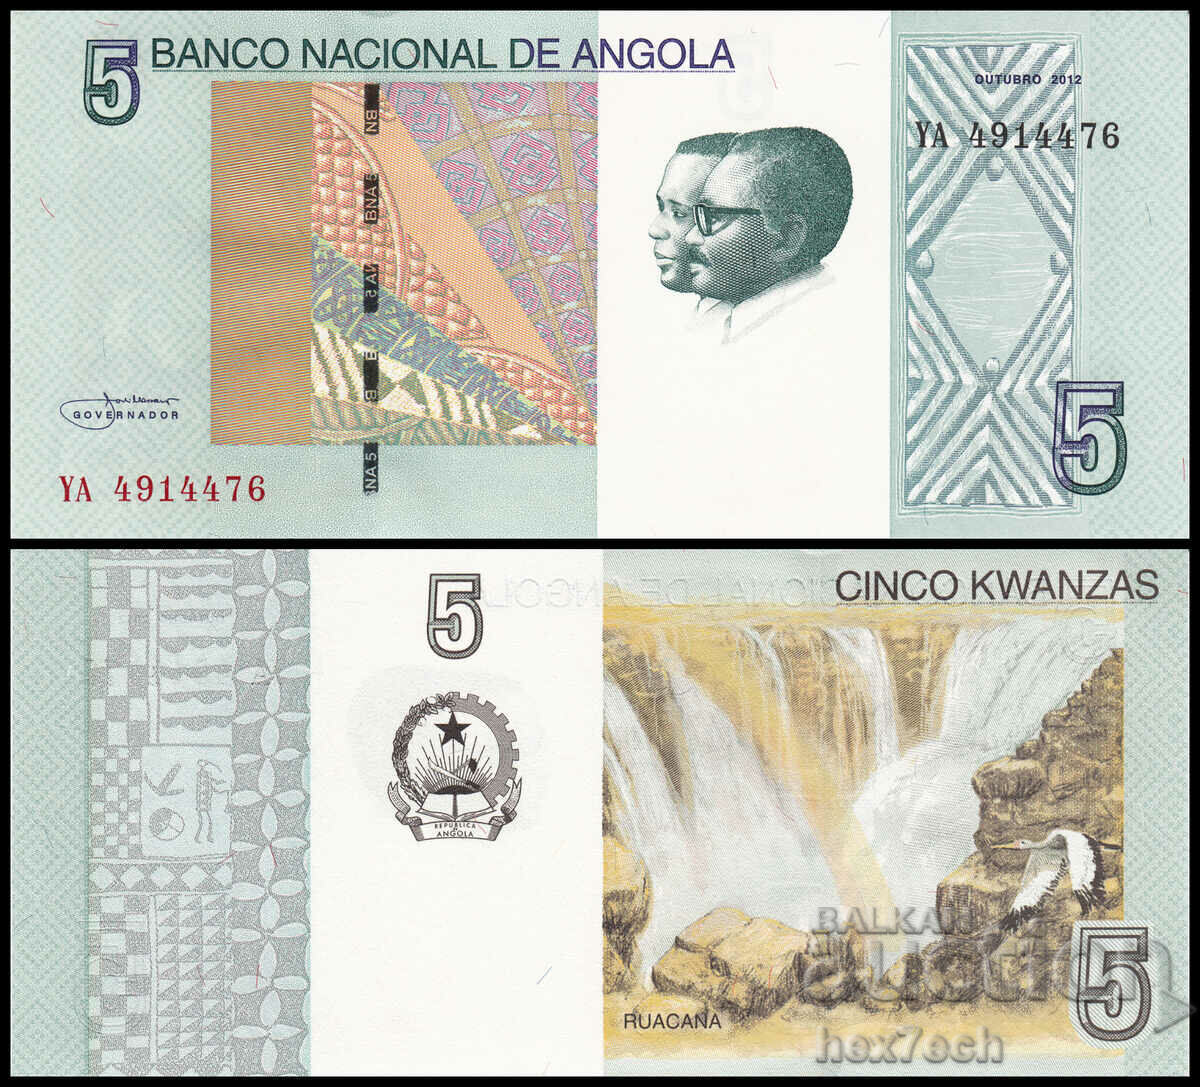 ❤️ ⭐ Angola 2012 5 Kwanzaa UNC new ⭐ ❤️